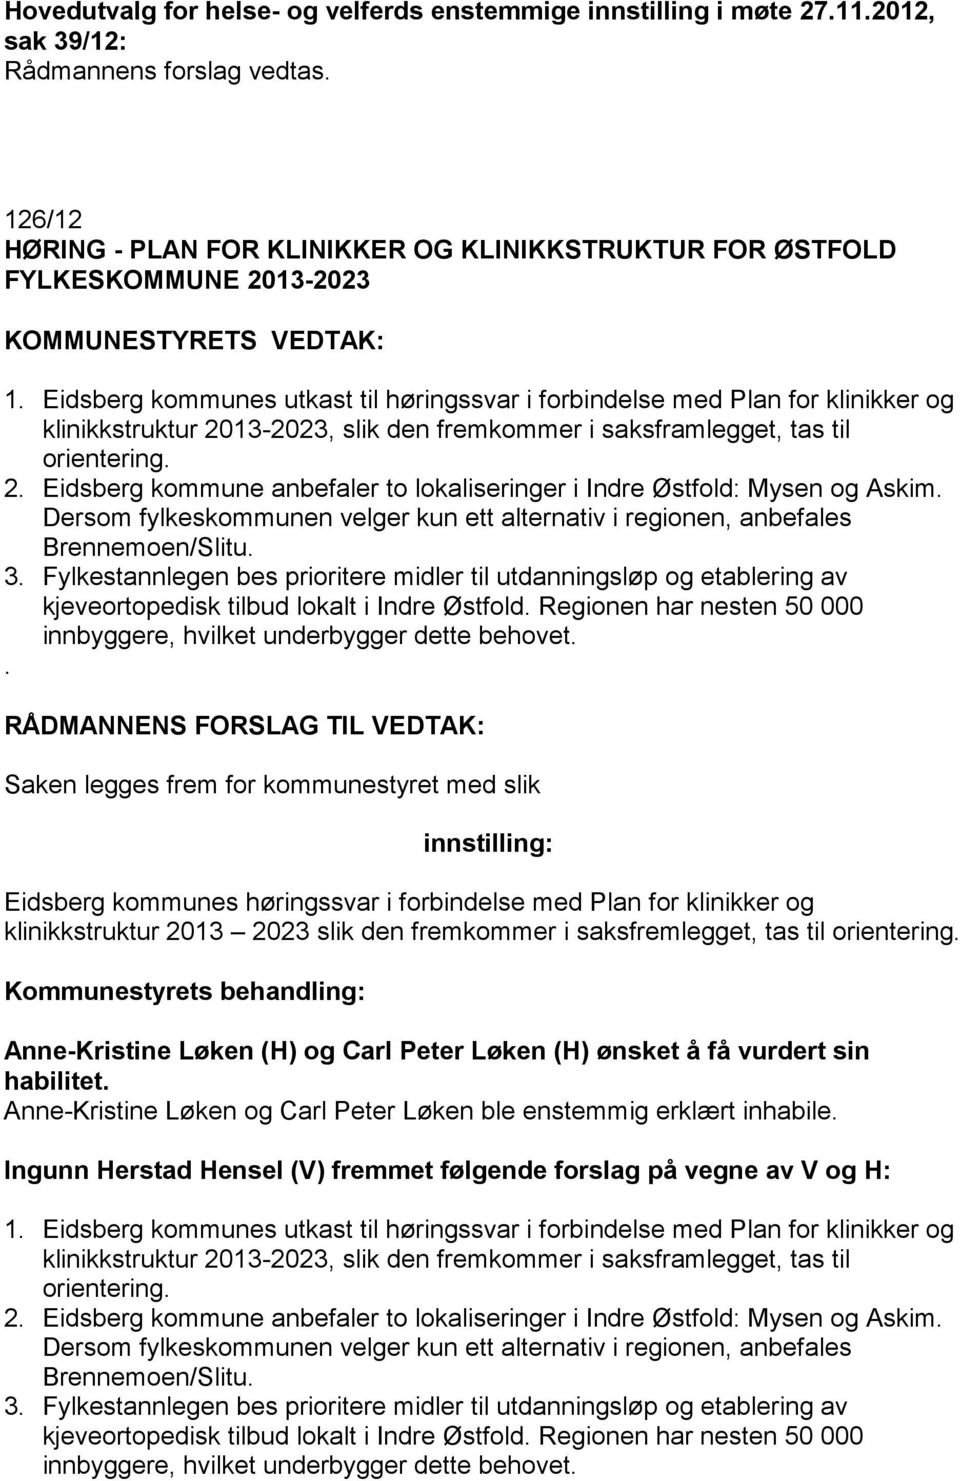 Eidsberg kommunes utkast til høringssvar i forbindelse med Plan for klinikker og klinikkstruktur 2013-2023, slik den fremkommer i saksframlegget, tas til orientering. 2. Eidsberg kommune anbefaler to lokaliseringer i Indre Østfold: Mysen og Askim.